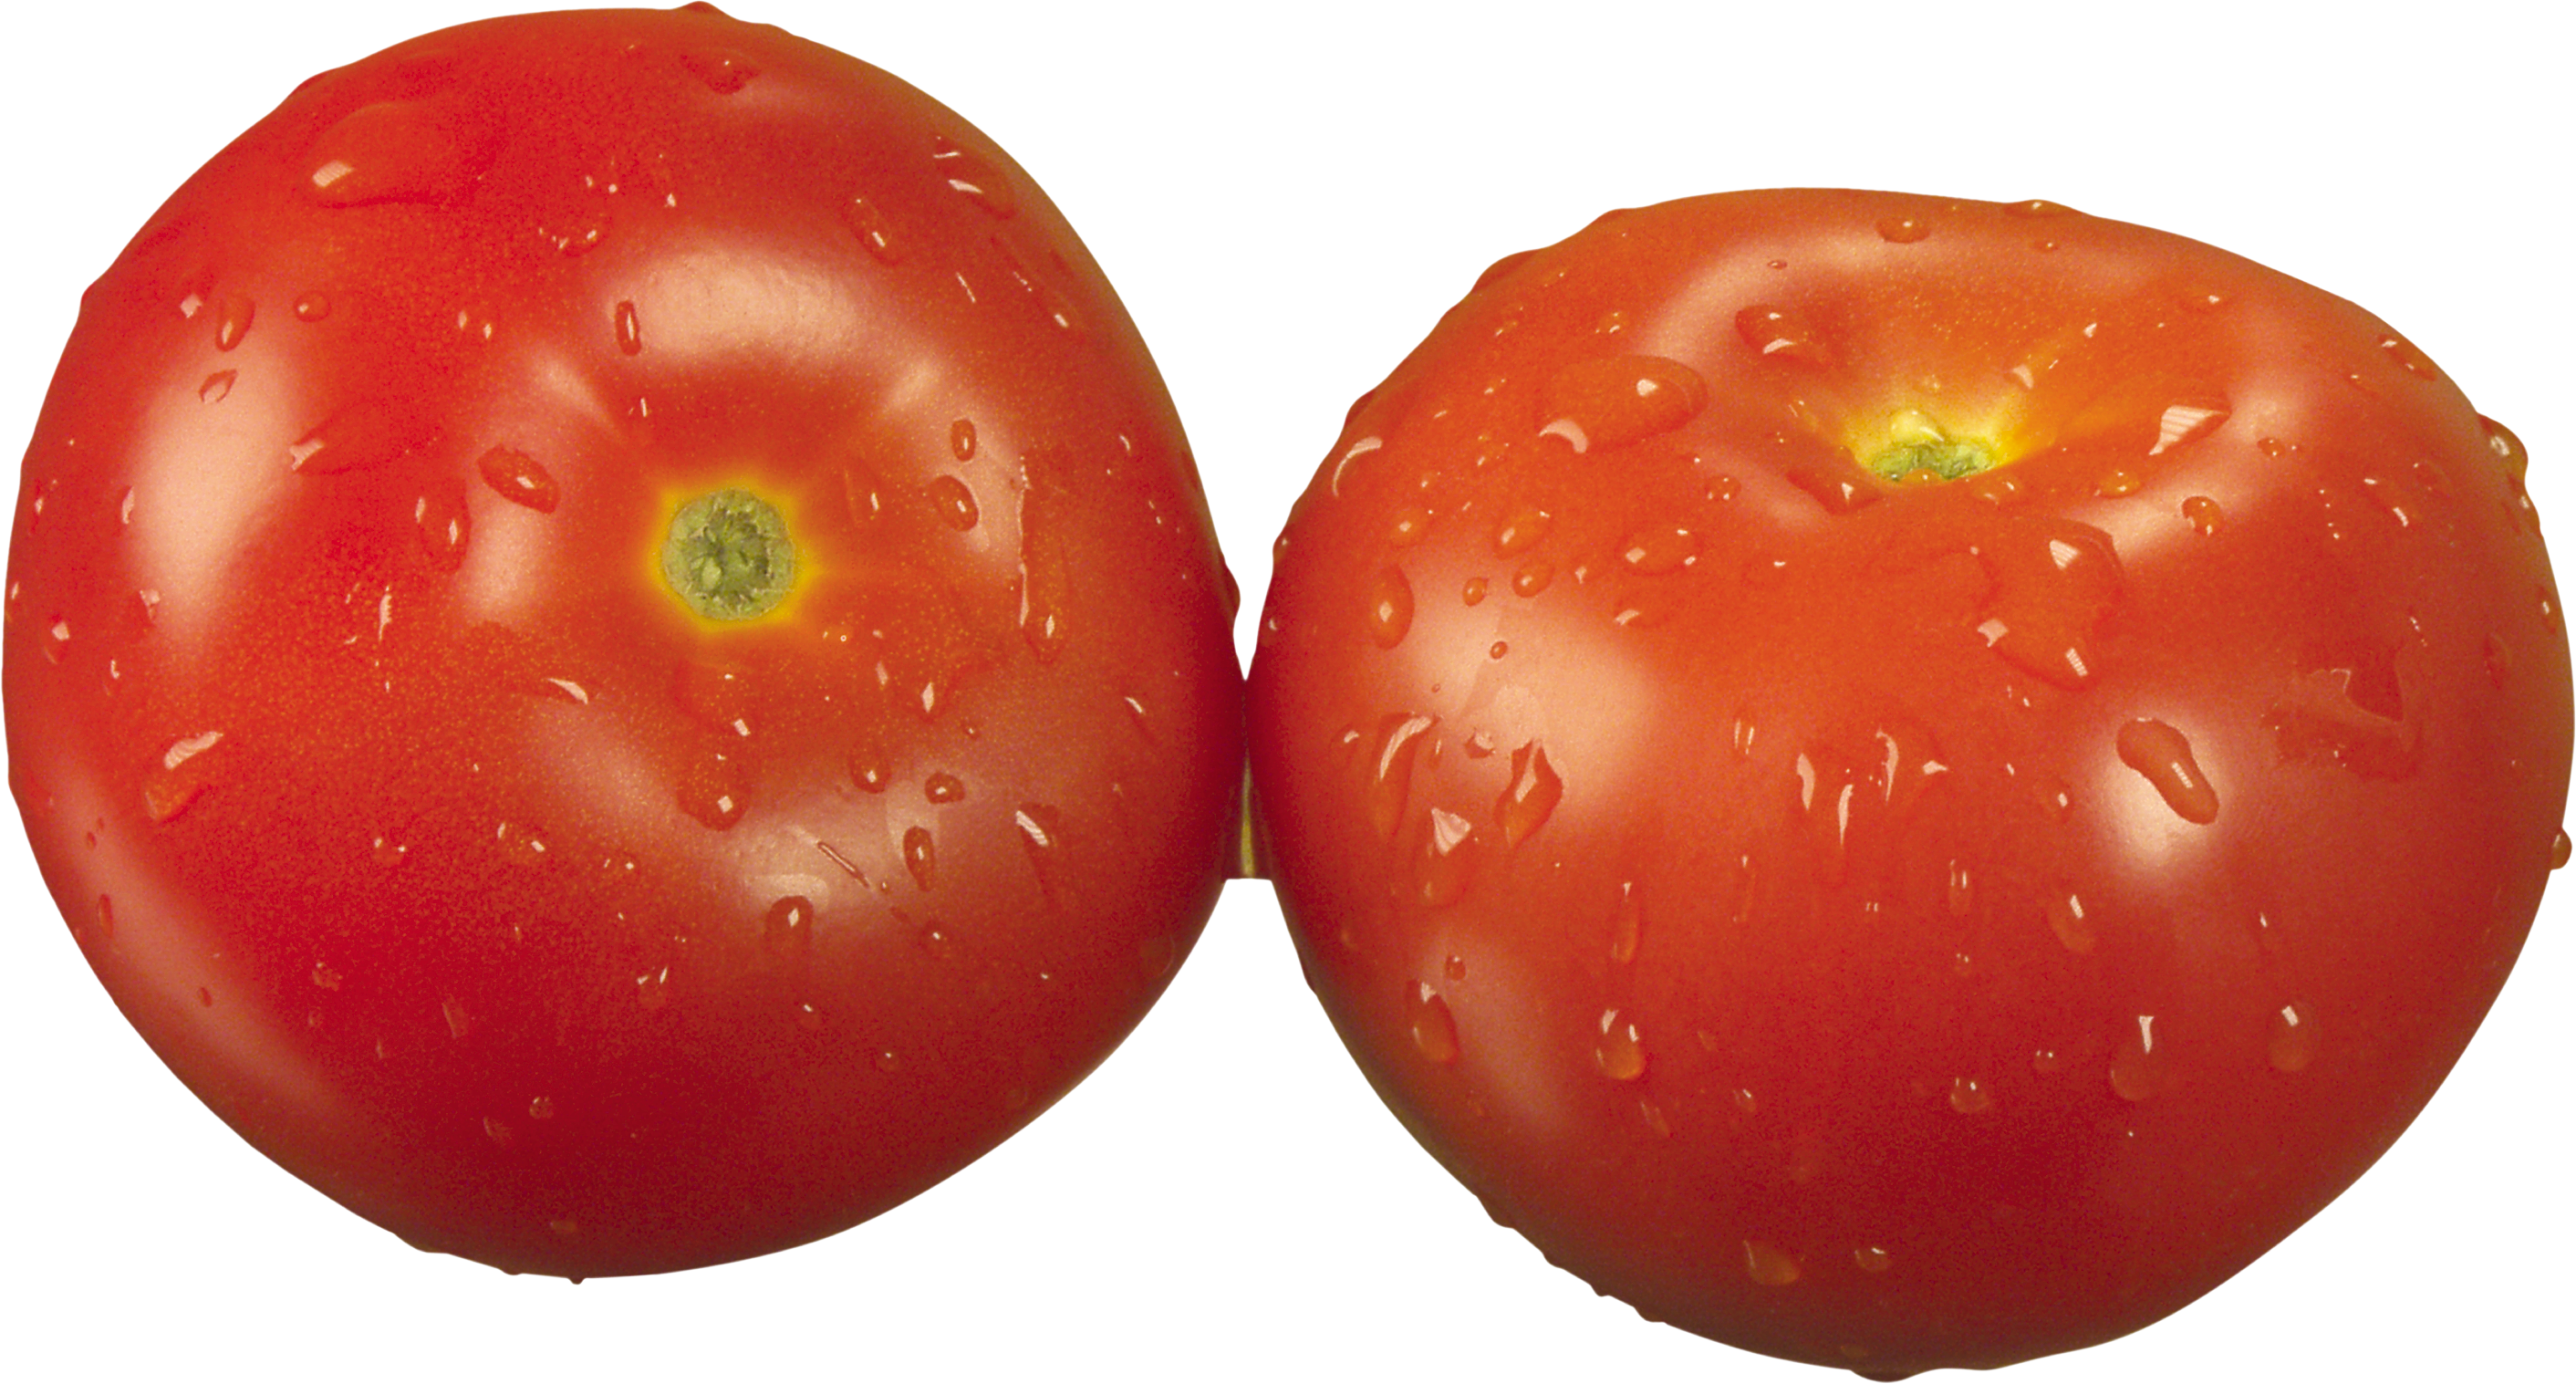 トマト2個